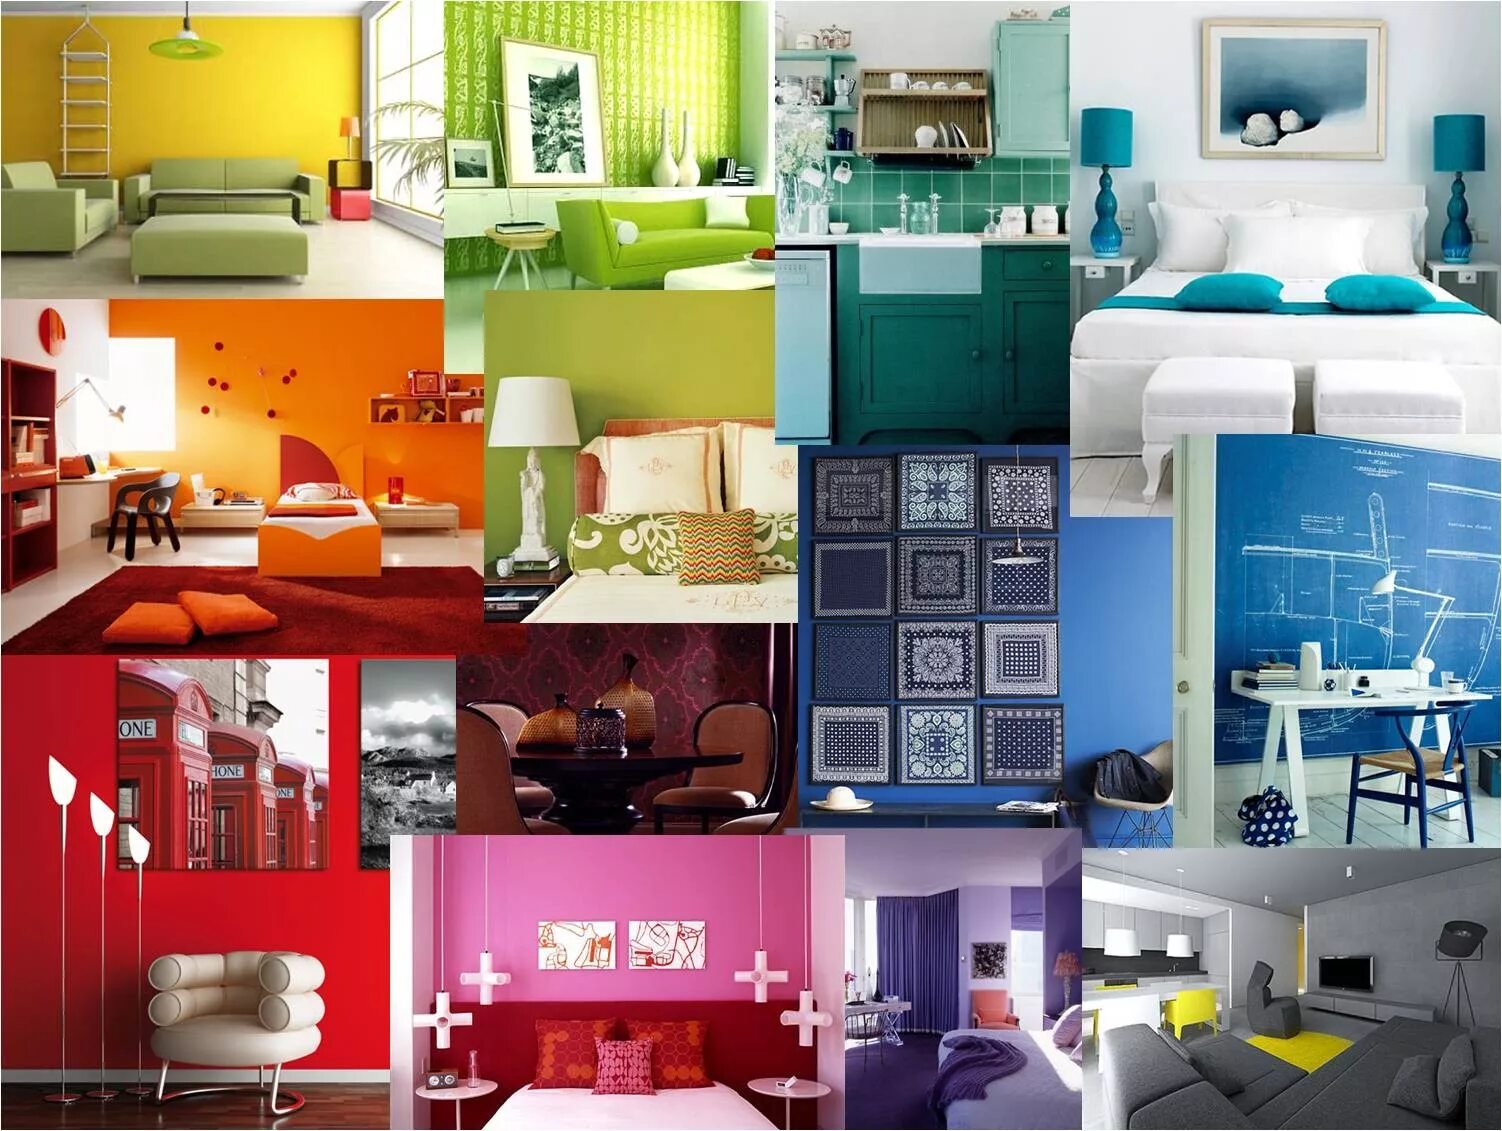 Определите вид дизайна. Цветовые решения в интерьере. Цветовая гамма в интерьере квартиры. Интерьер комнаты цветовая гамма. Дизайнерский коллаж.